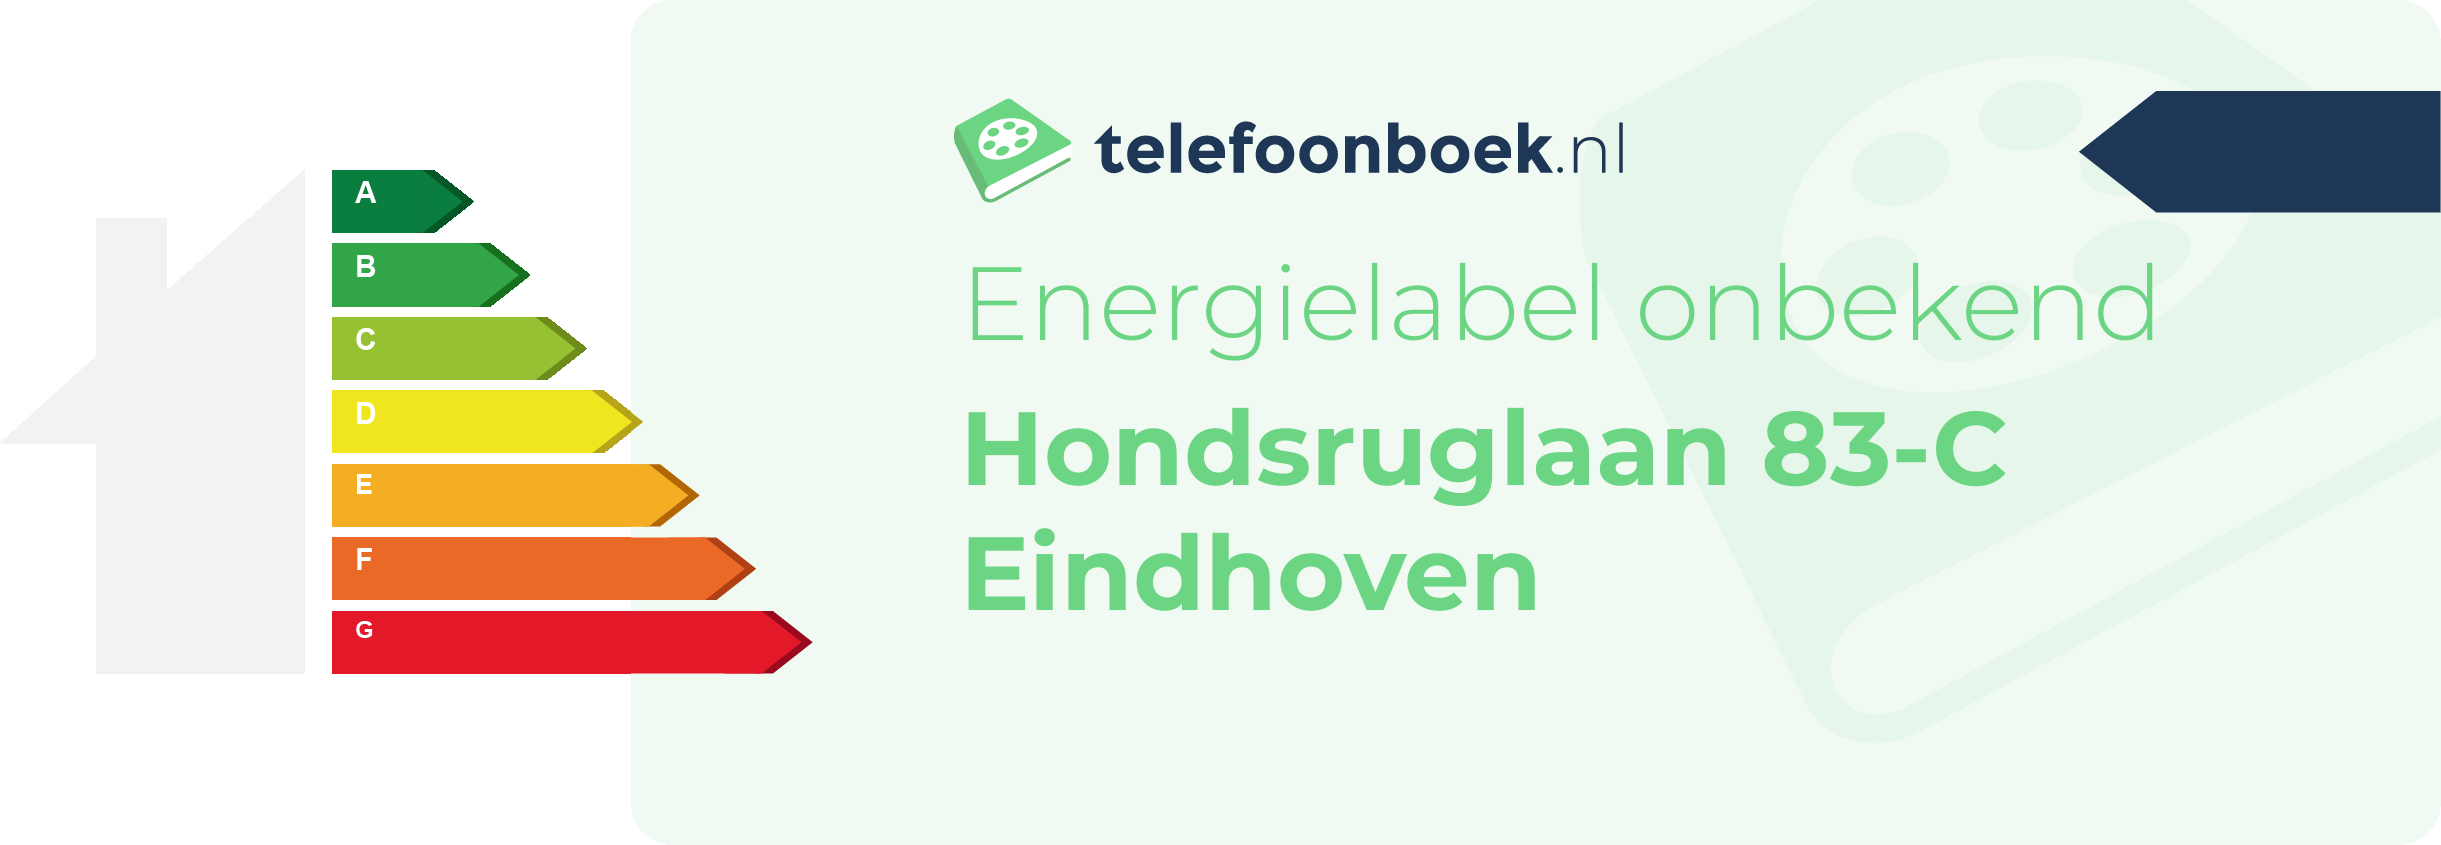 Energielabel Hondsruglaan 83-C Eindhoven